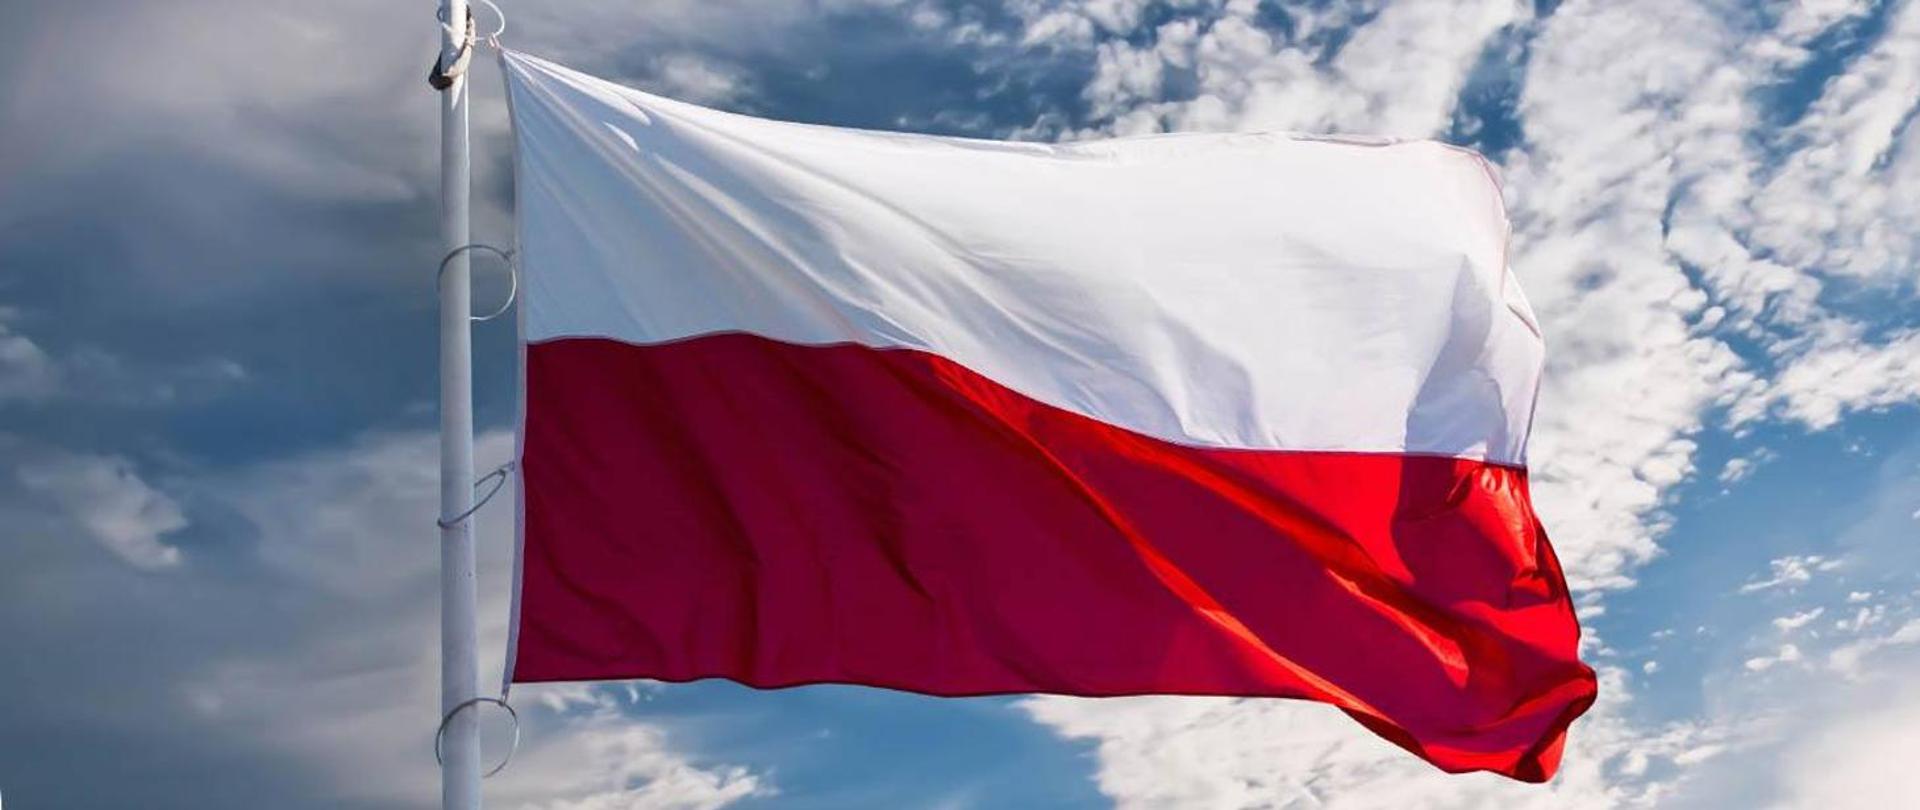 Flaga Polski w tle błękitne niebo z chmurami.